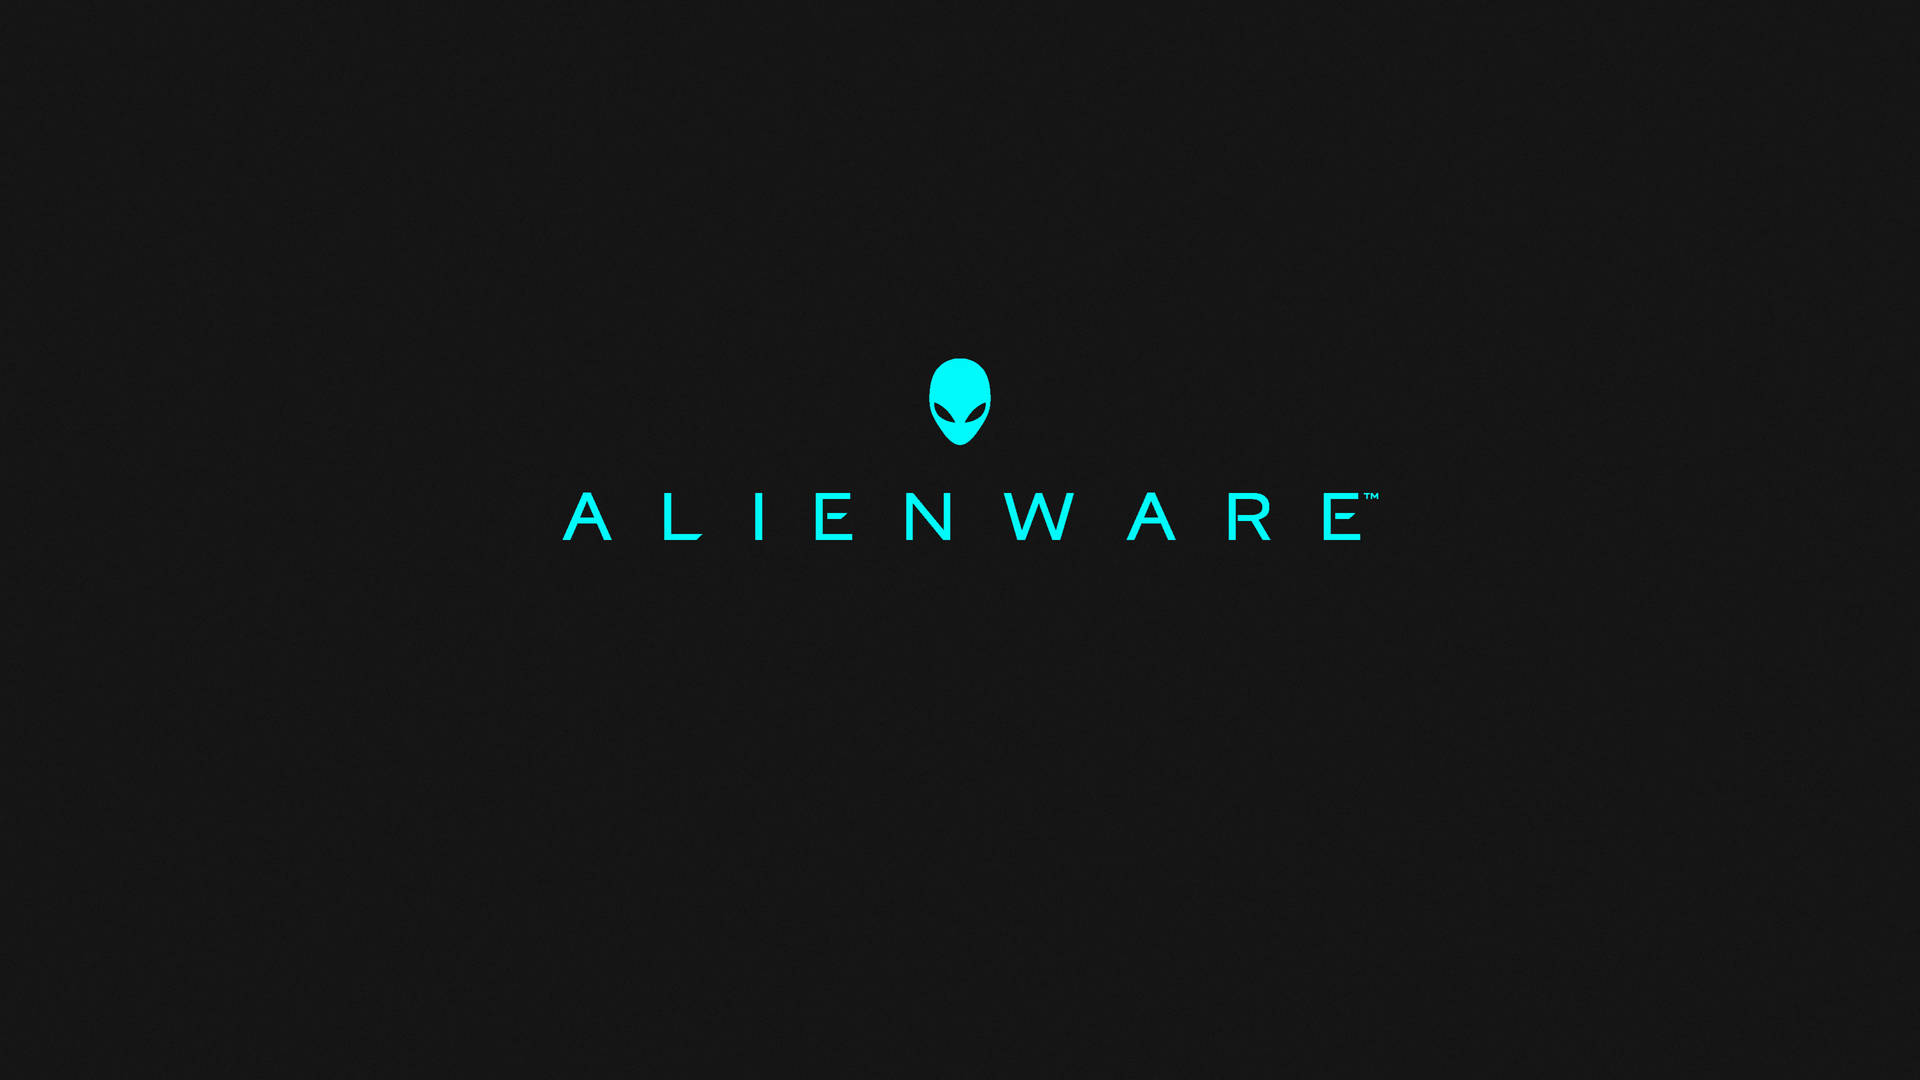 3840x2160 Alienware Minimalist: 3840x2160 Alienware Minimalist. Wallpaper